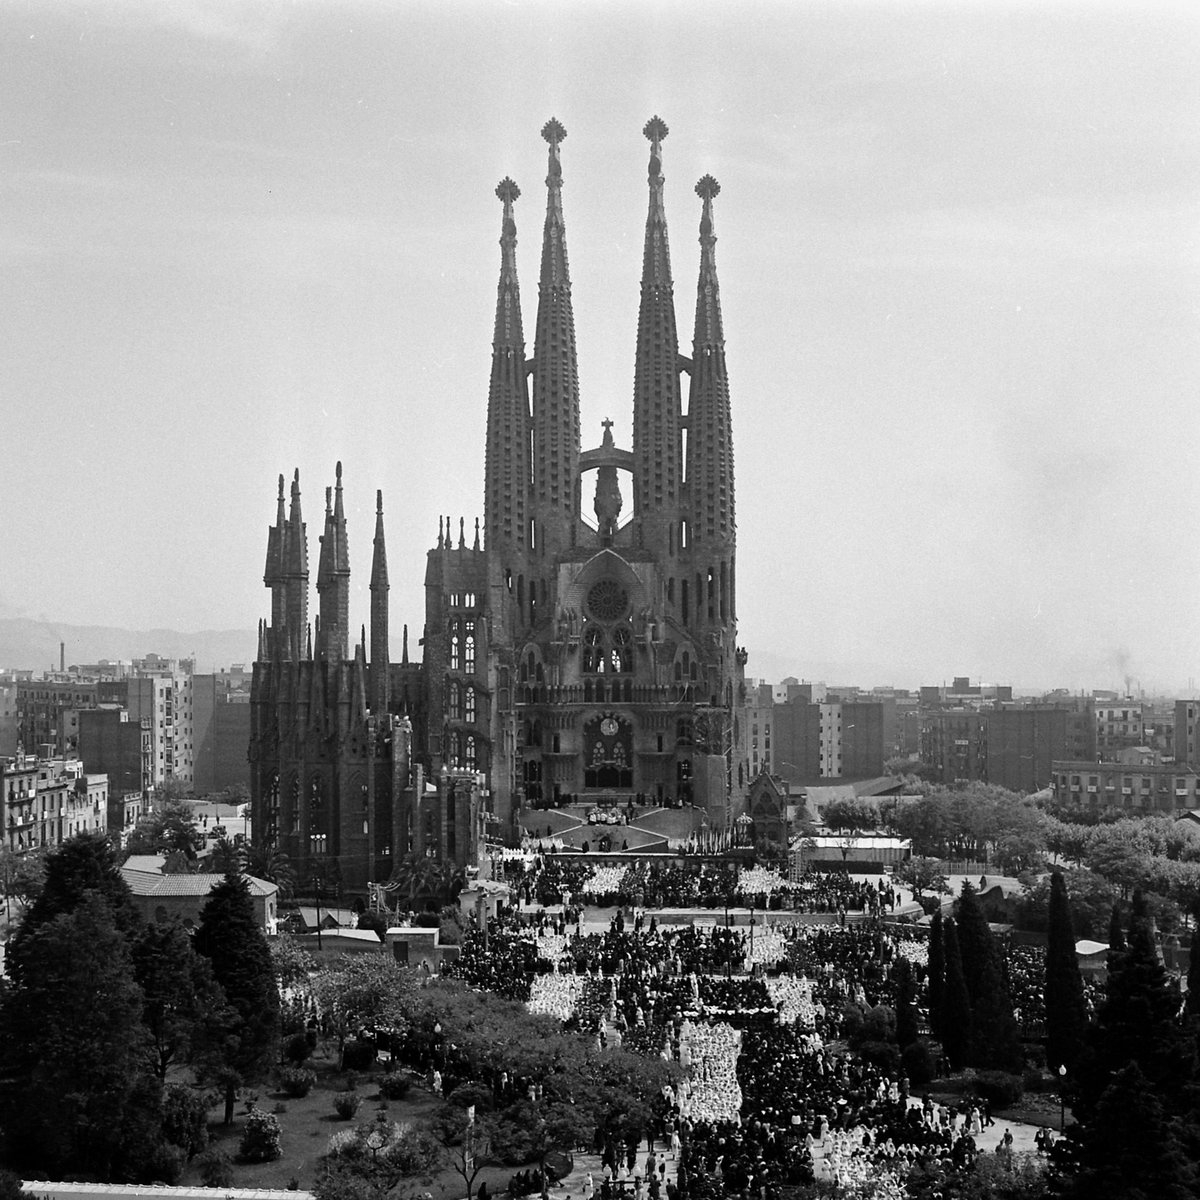 Image of the Basilica de la Sagrada Familia during the Eucharistic Congress held in 1952 in Barcelona, Spain. 🇪🇸

(📷 Dmitri Kessel/LIFE Picture Collection) 

#LIFEMagazine #LIFEArchive #DmitriKessel #Spain #Barcelona #LaSagradaFamilia #Architecture #Travel #Cathocilicism